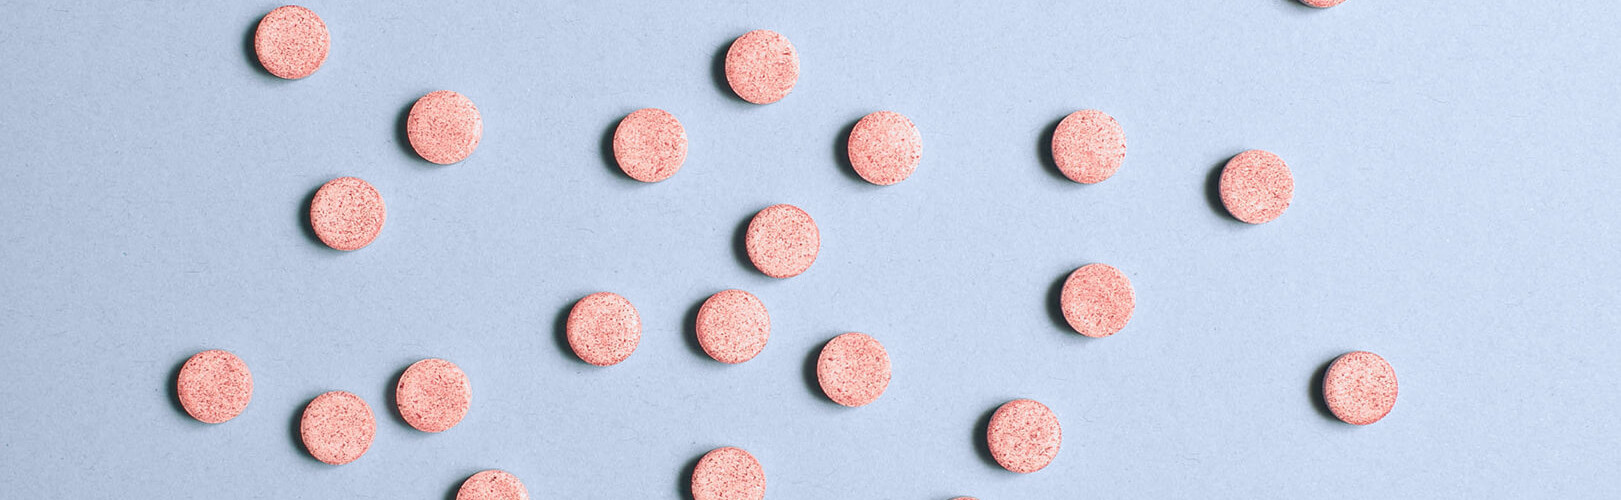 Vitamine B12 tabletten? | B12.nl